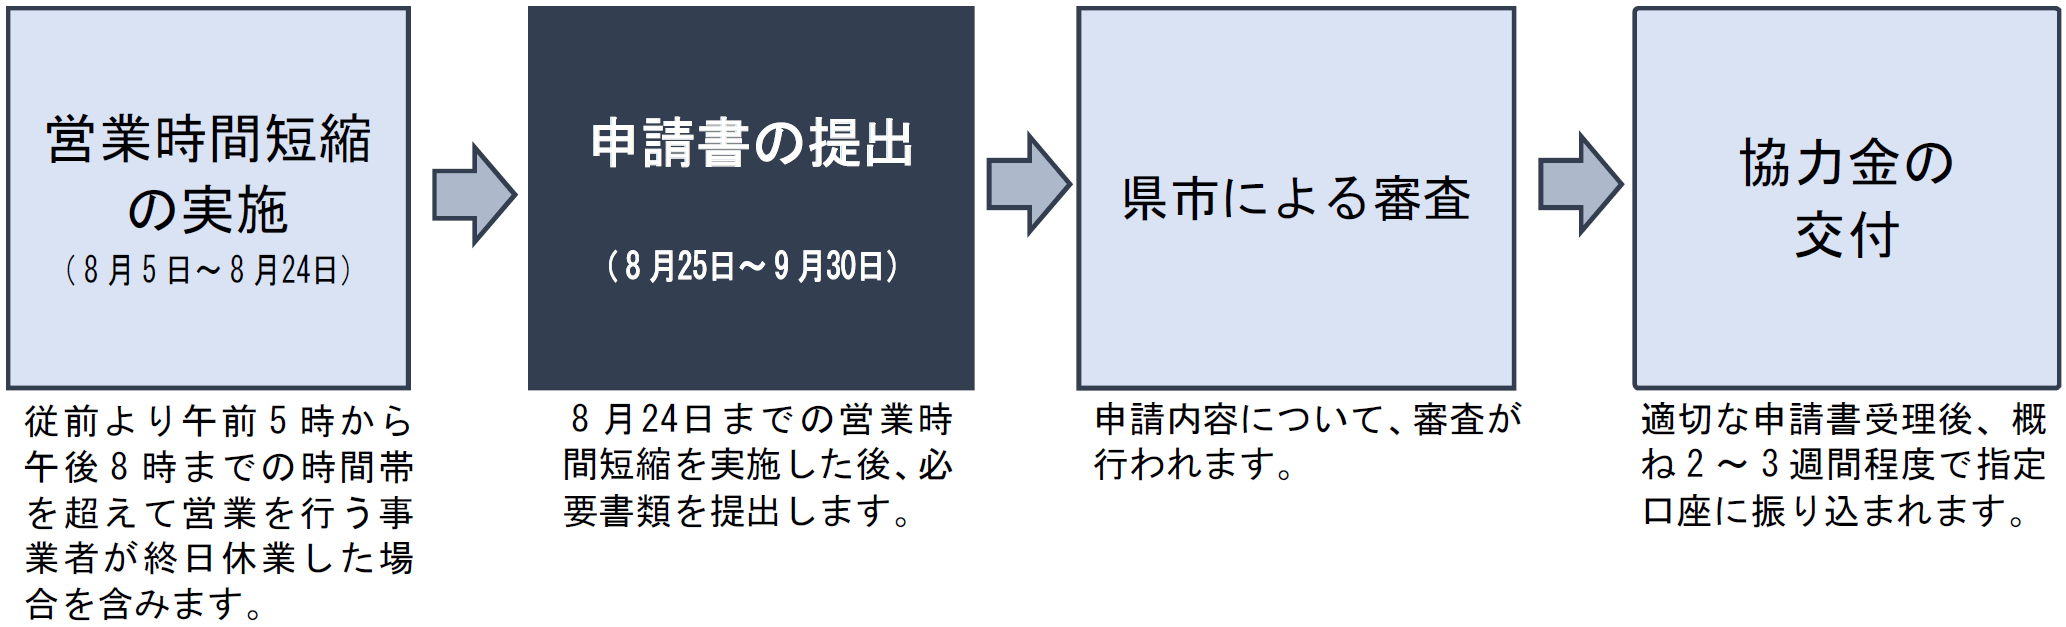 愛知県・名古屋市感染防止対策協力金